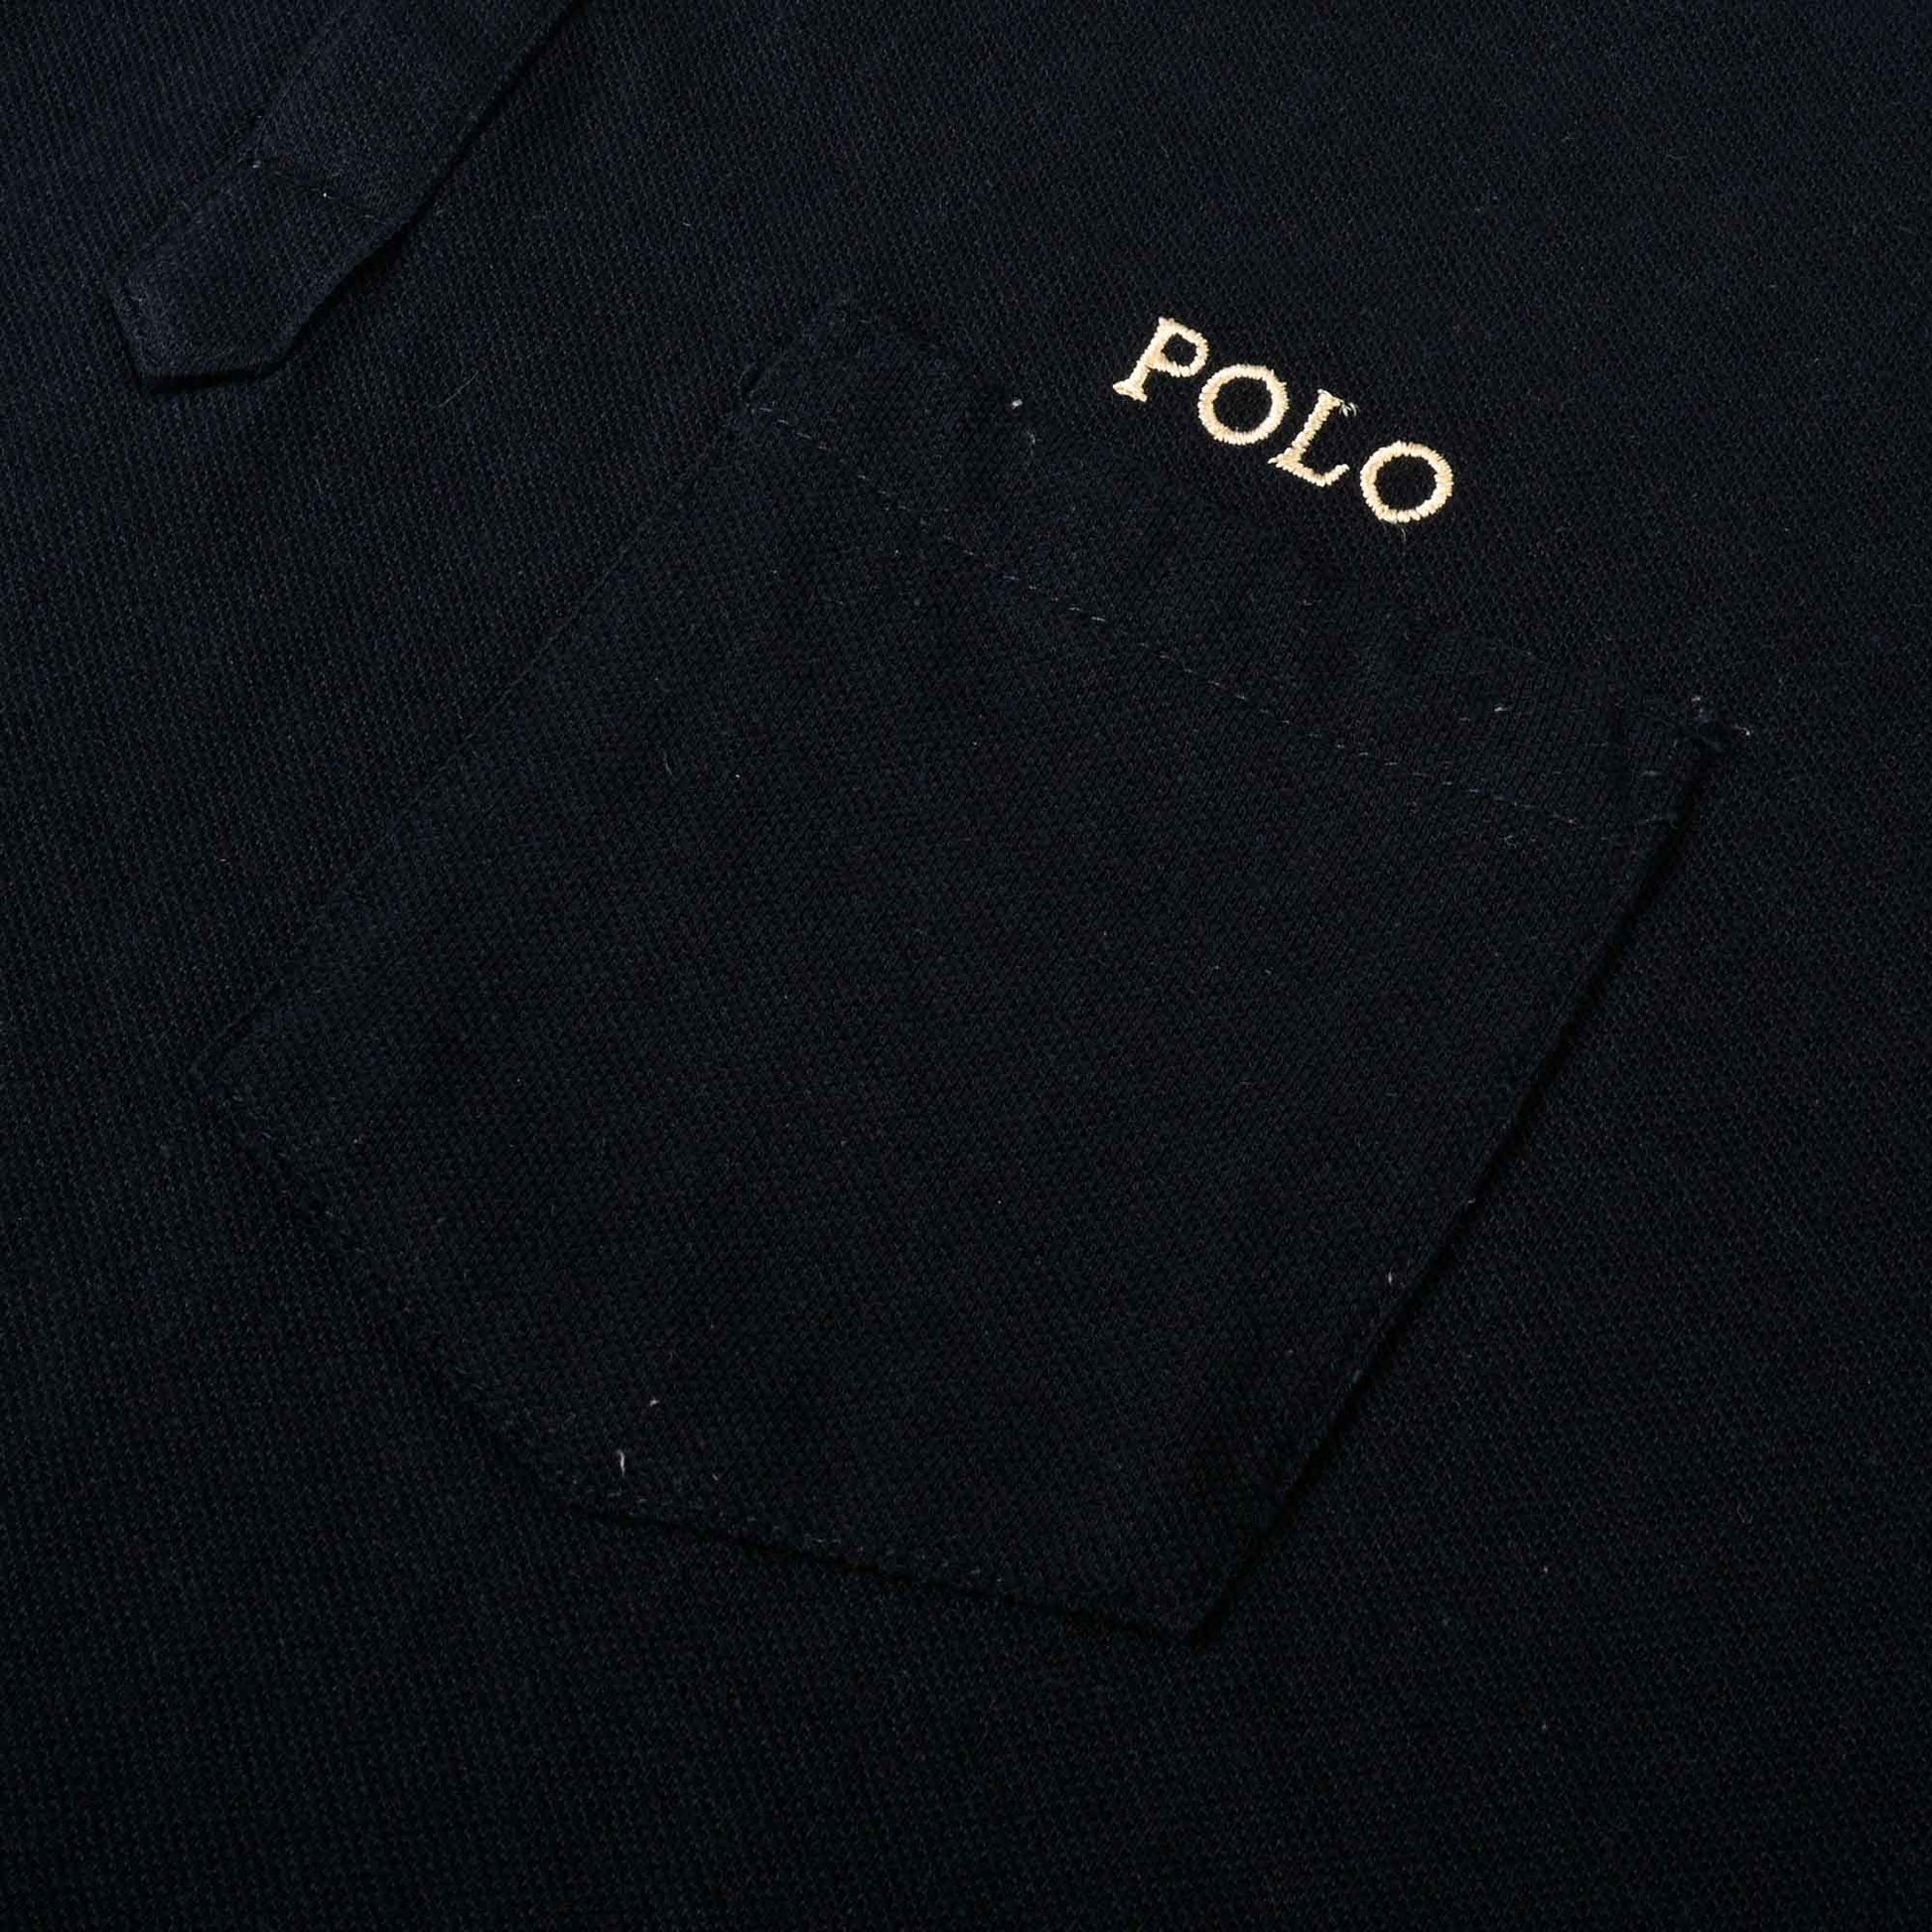 Polo Republica Men's Crest & Polo Embroidered Pocket Polo Shirt Men's Polo Shirt Polo Republica 